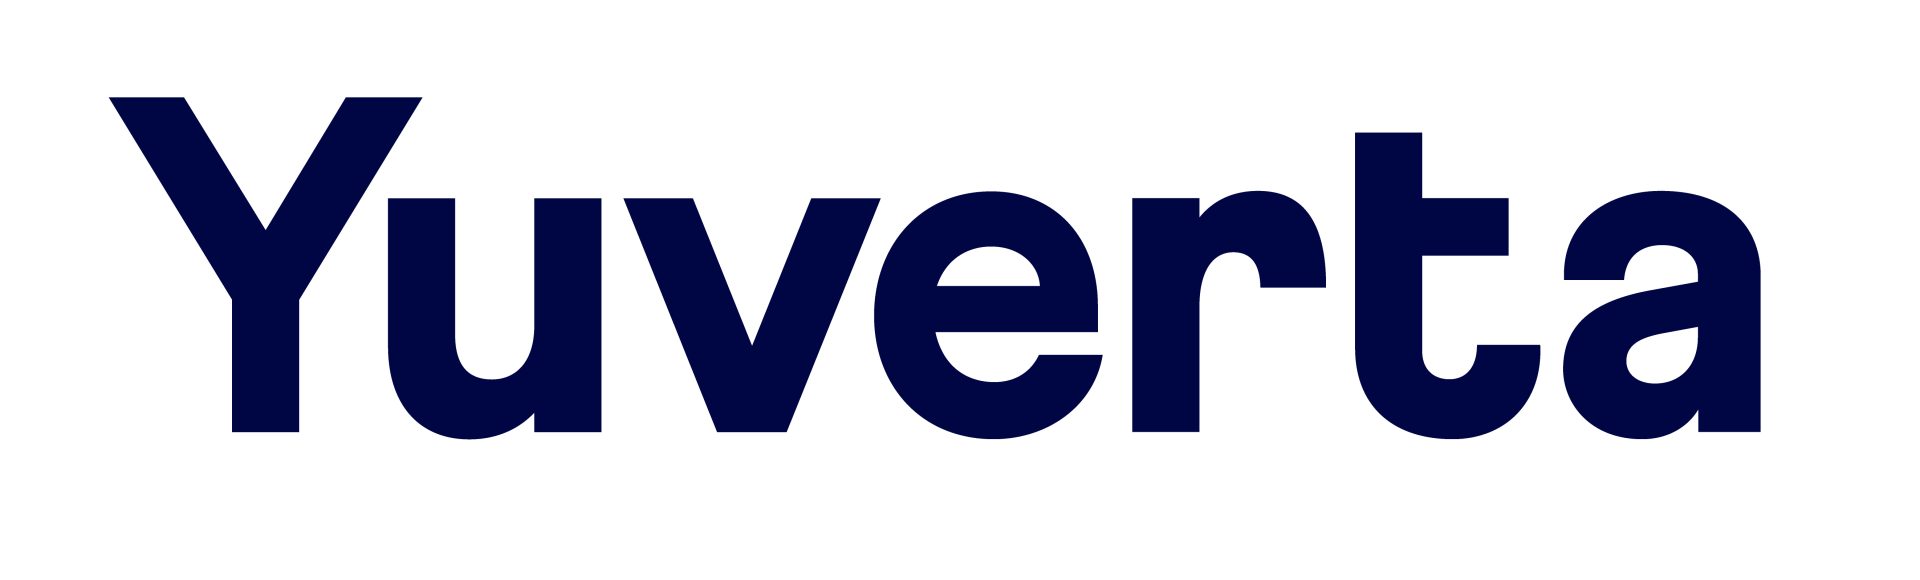 yverta-logo